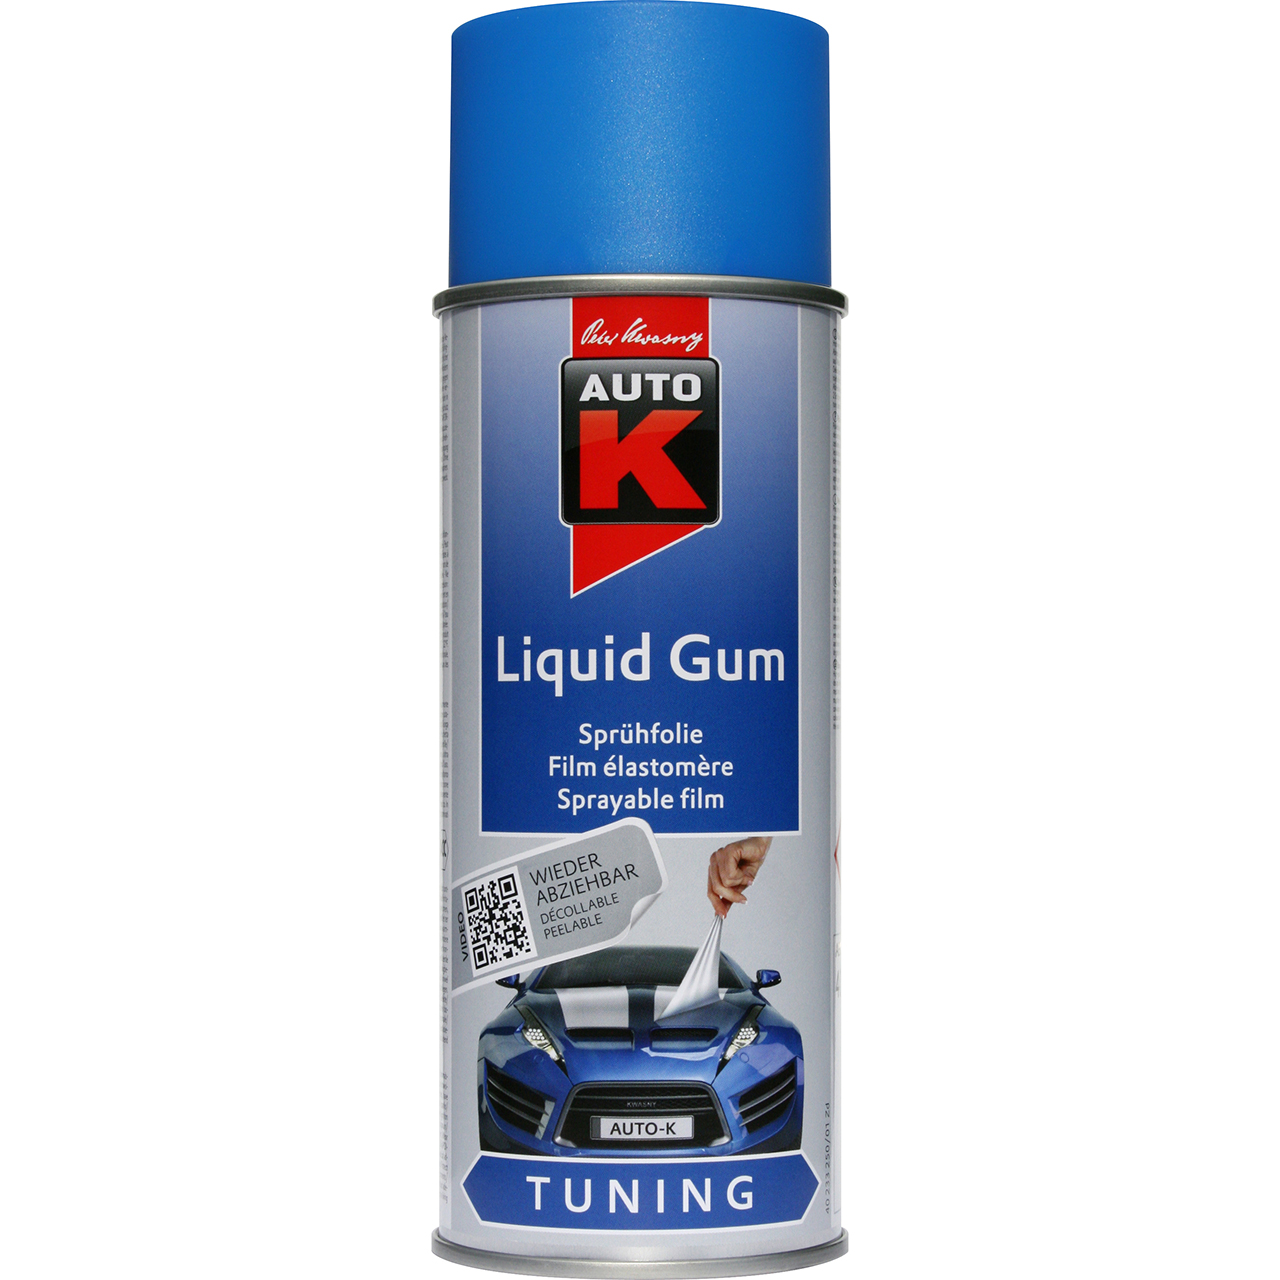 Auto-K Tuning Liquid Gum brilliantblau 400ml